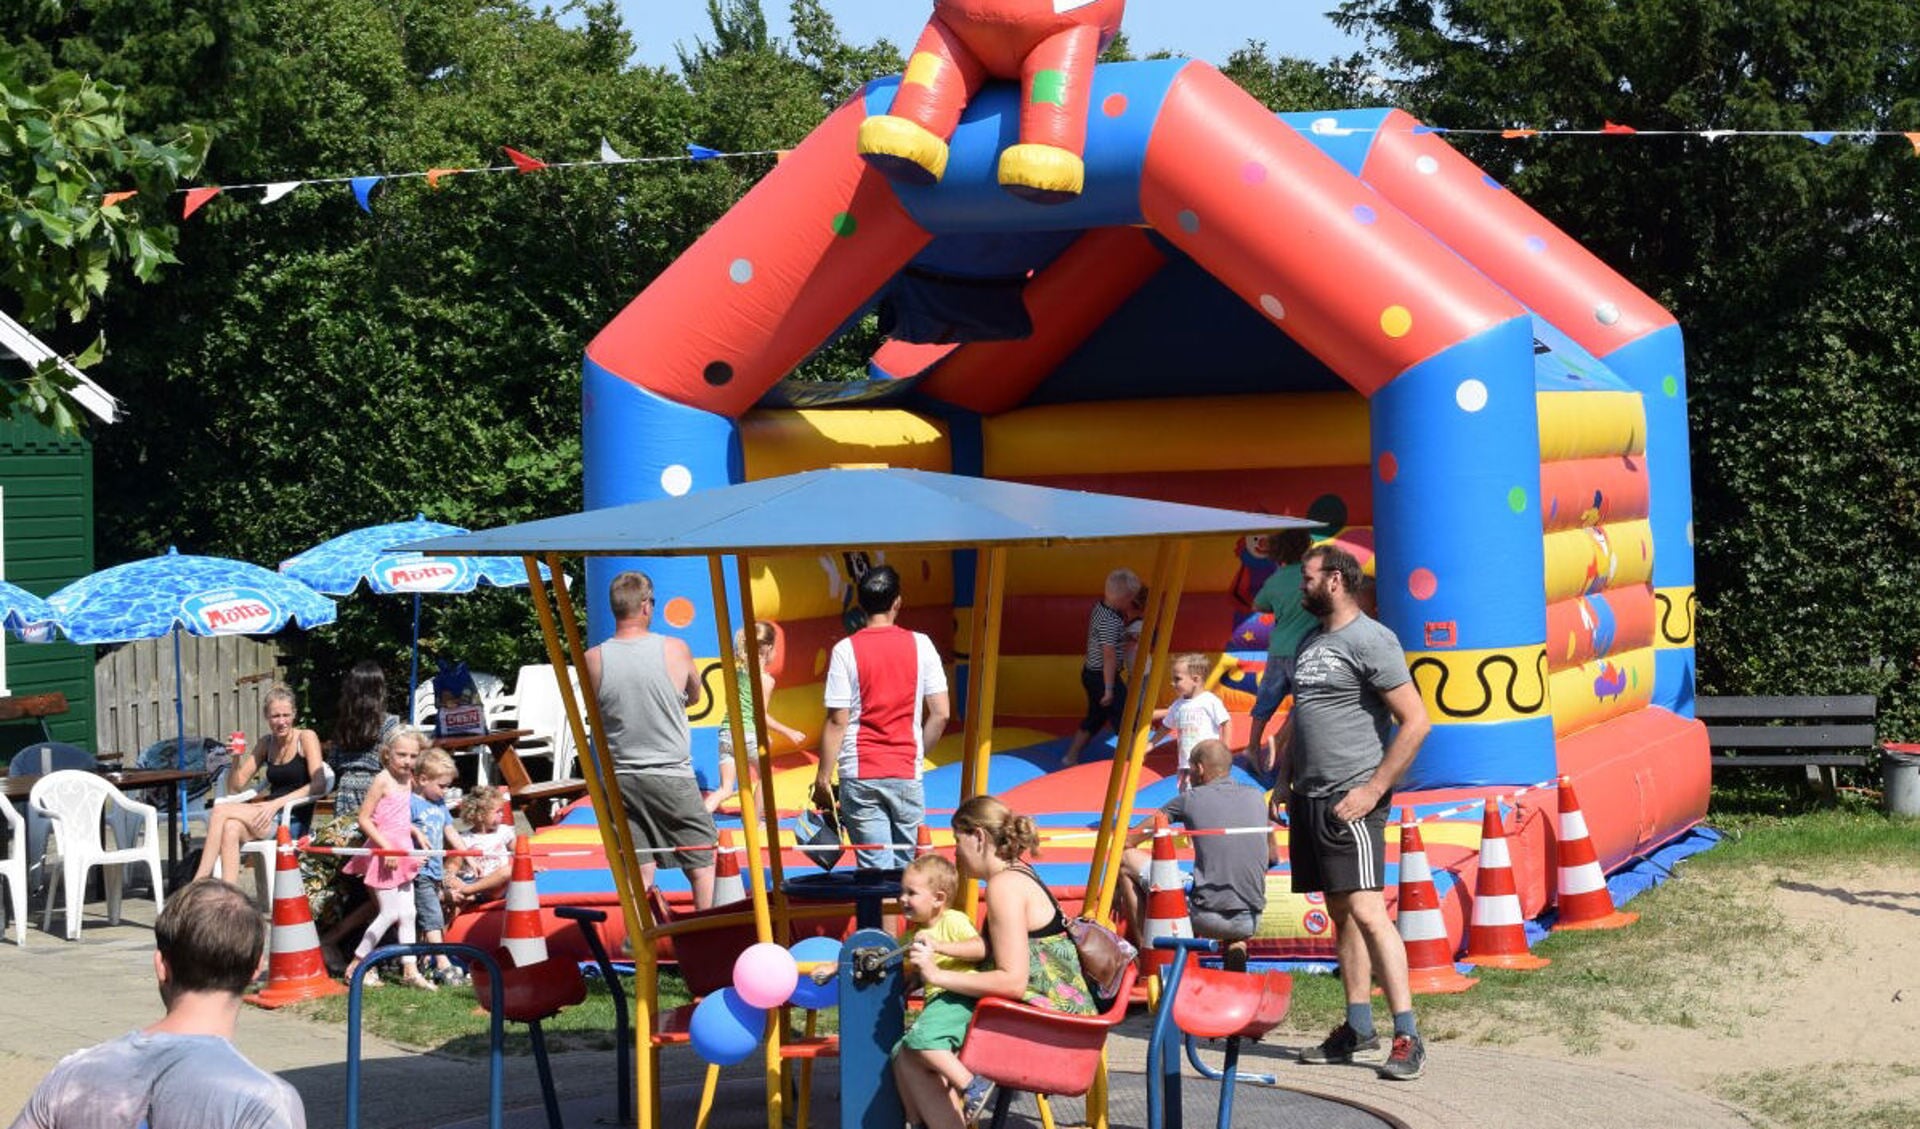 Speeltuin Kindervreugd aan de Huiderlaan in Beverwijk is deze vakantie open.